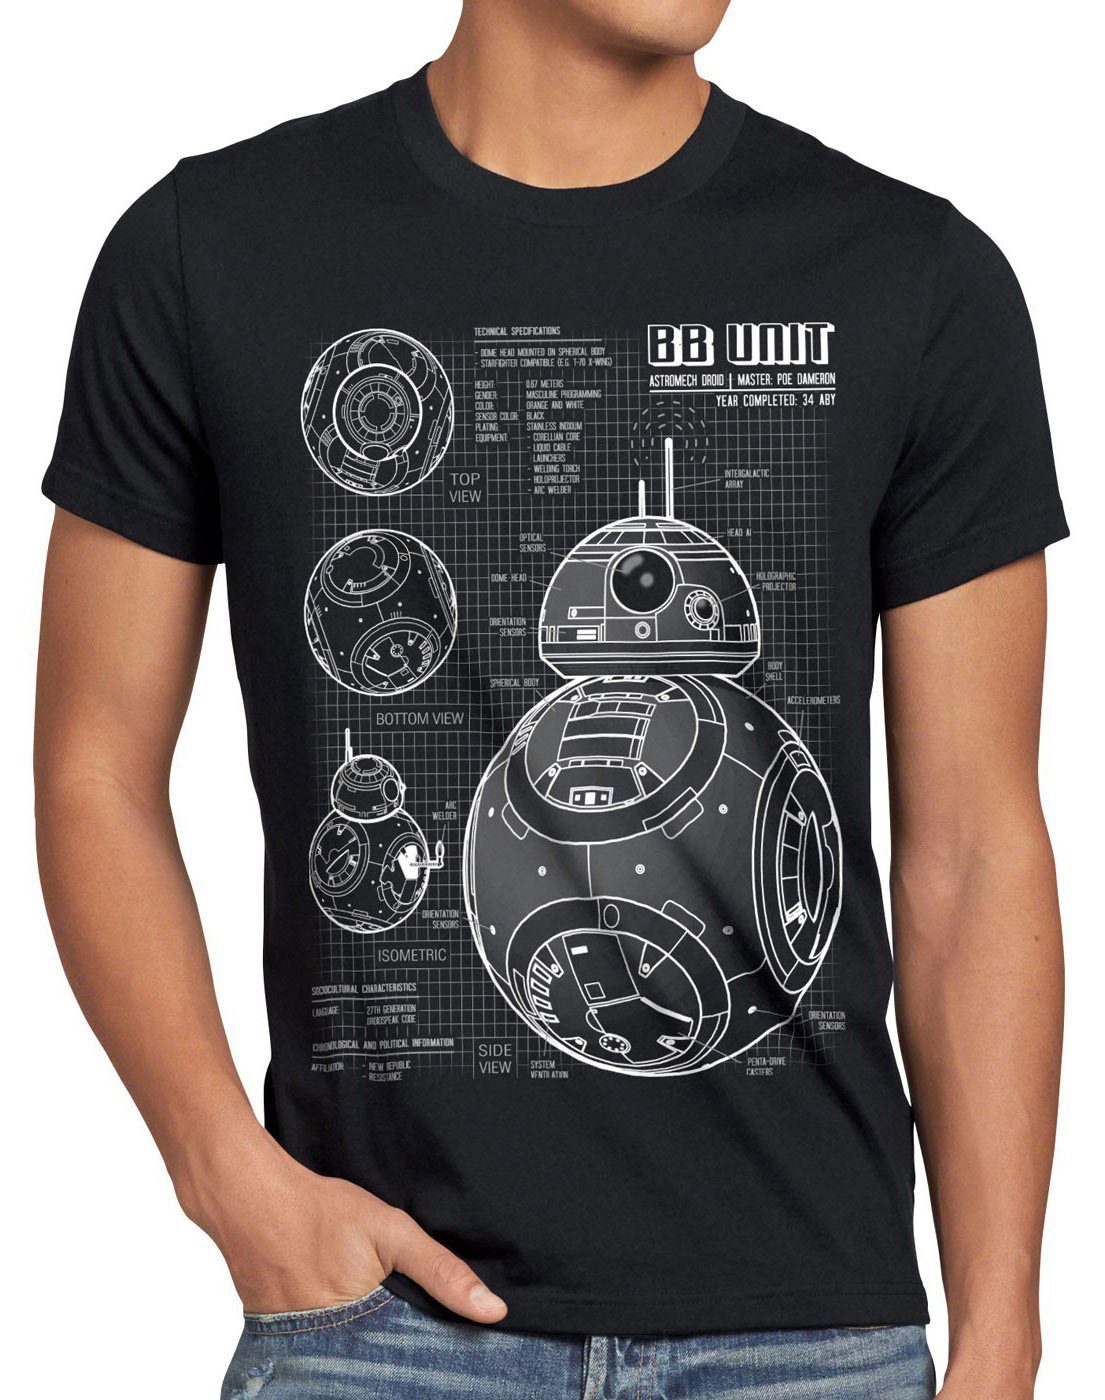 style3 Unit BB Herren schwarz Print-Shirt T-Shirt astromech blaupause droide